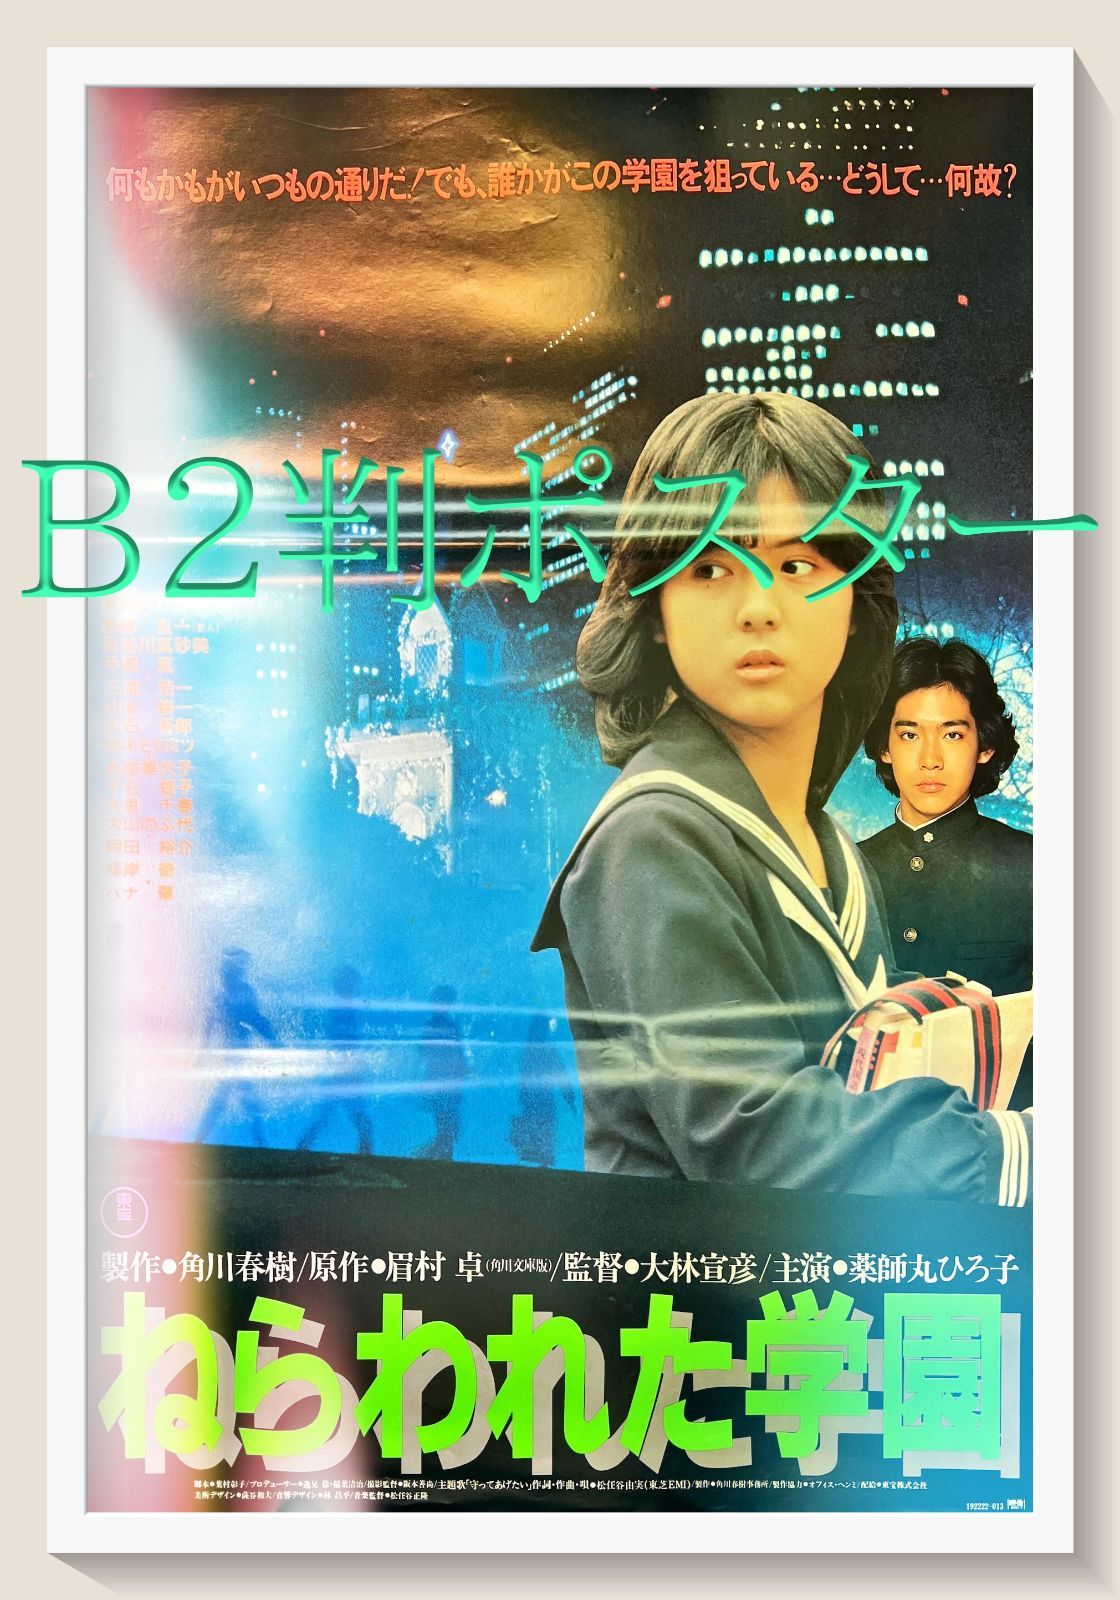 ねらわれた学園』映画B2判オリジナルポスター - メルカリ